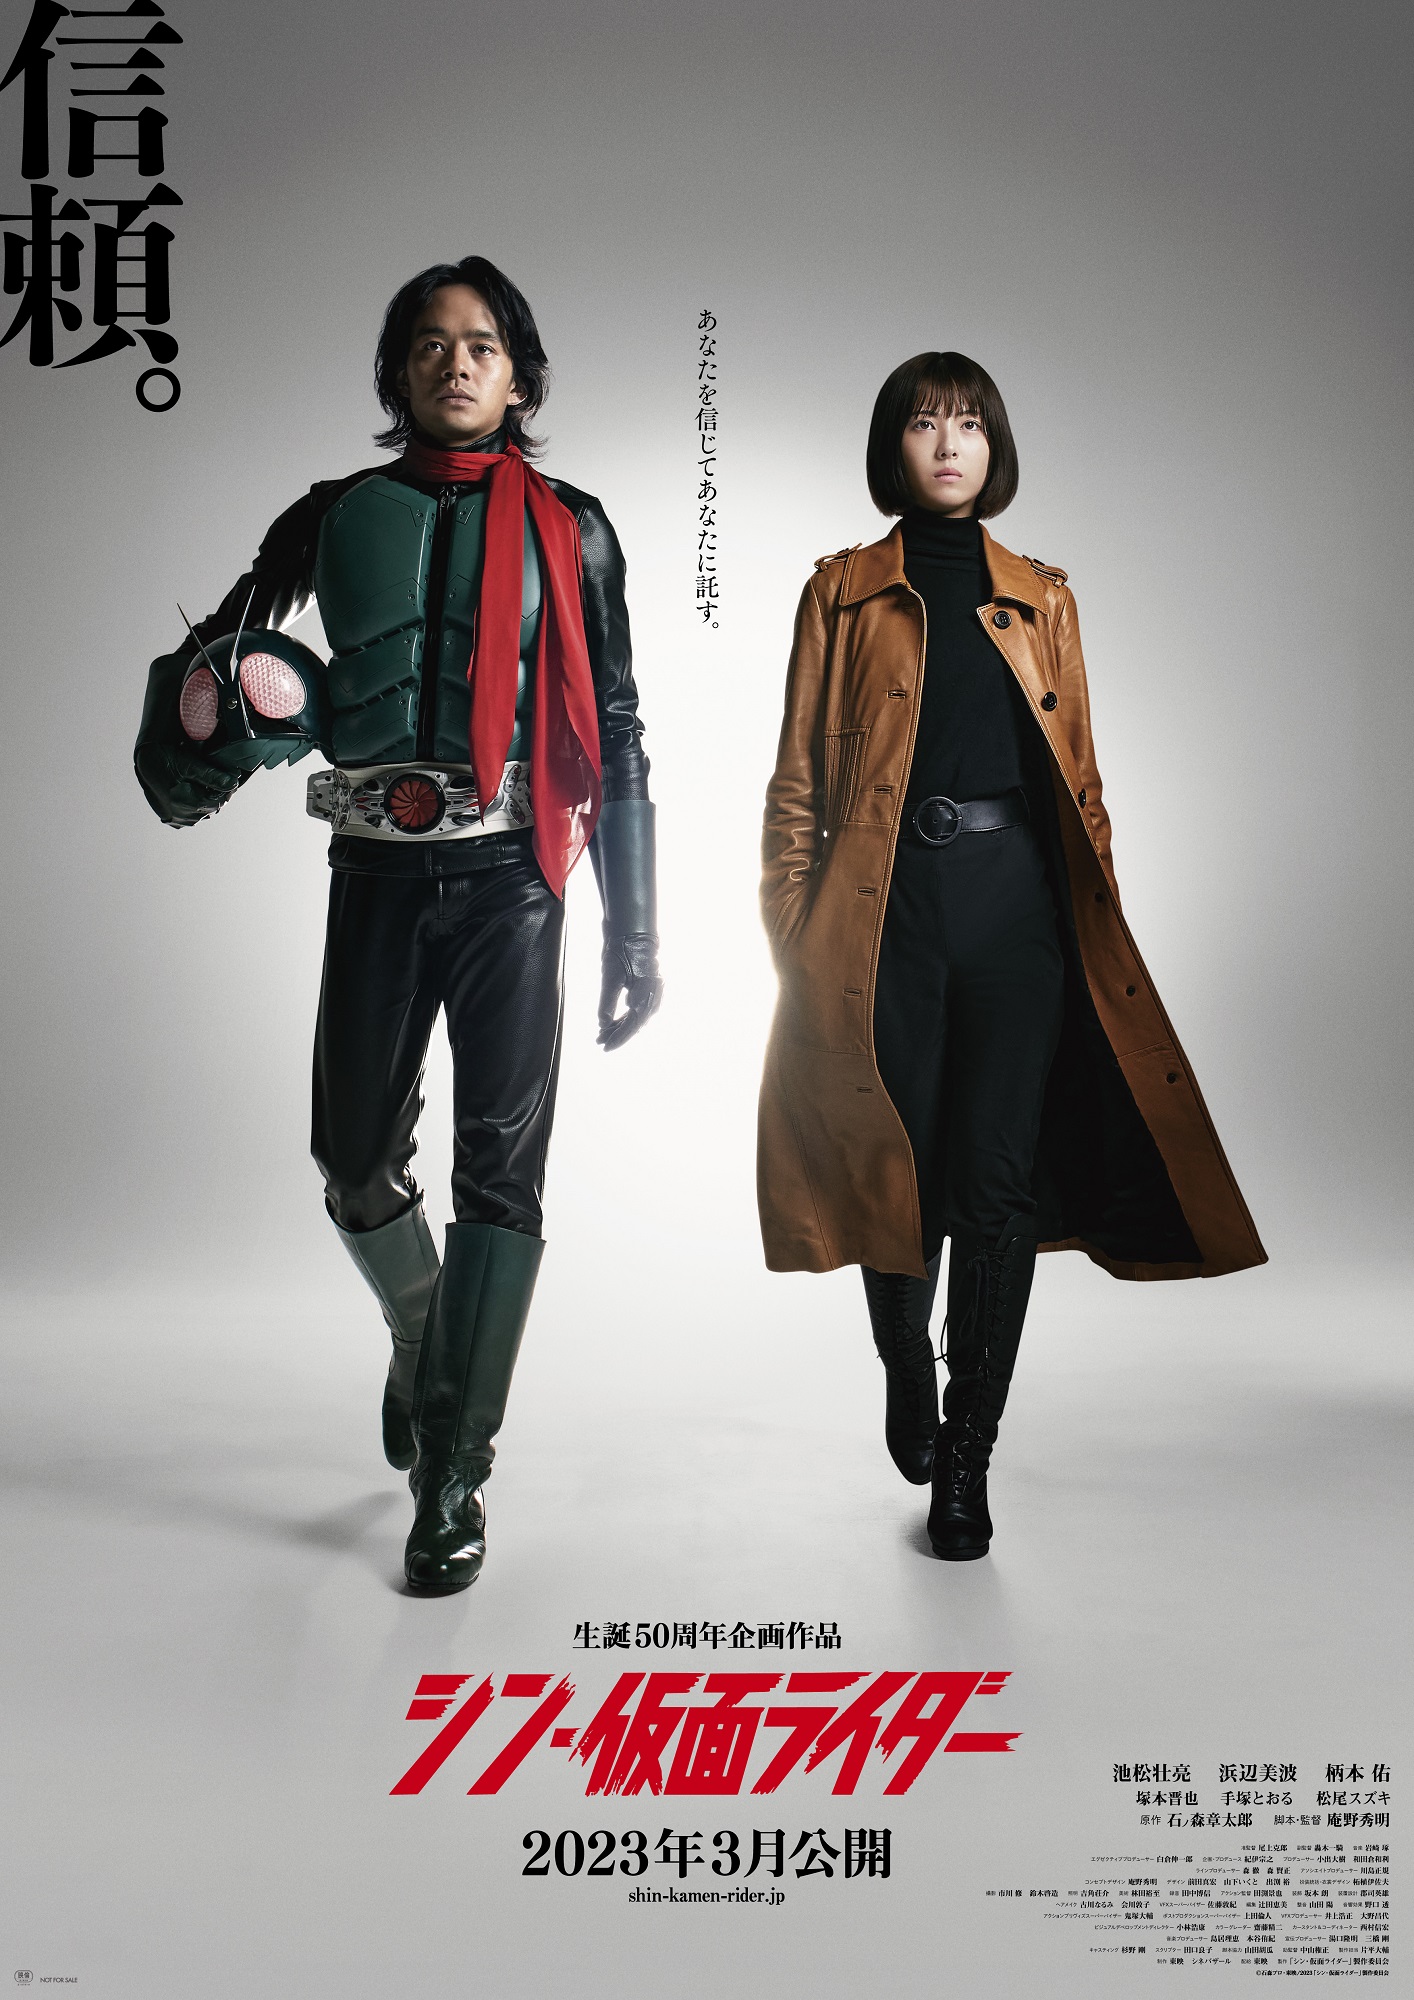 《新·假面骑士》新海报 庵野秀明执导明年3月日本上映